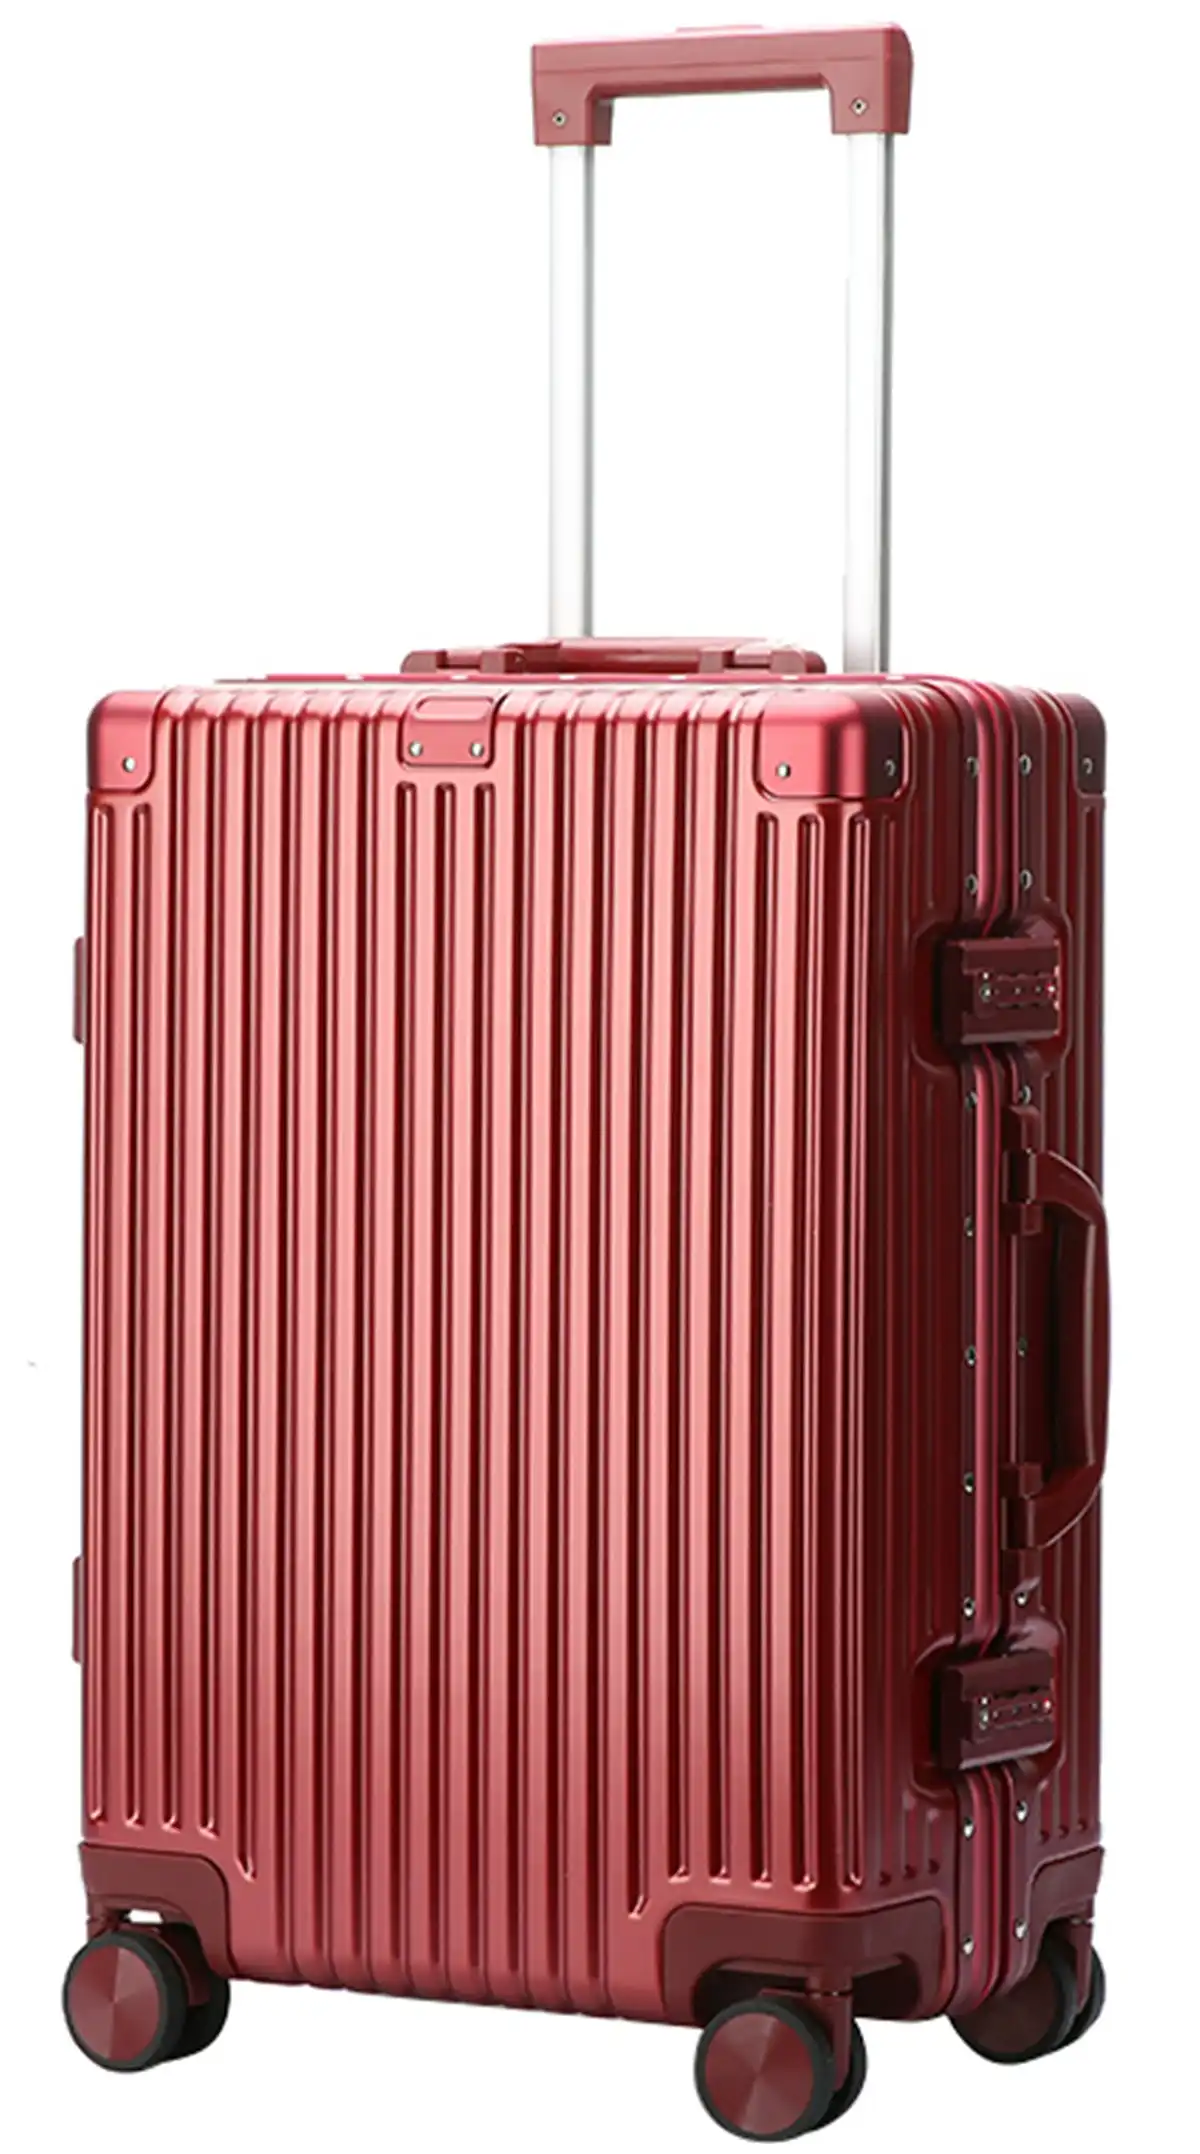 Bopai Aluminium Luggage Suitcase Light weight Large HardCase B3247 Red